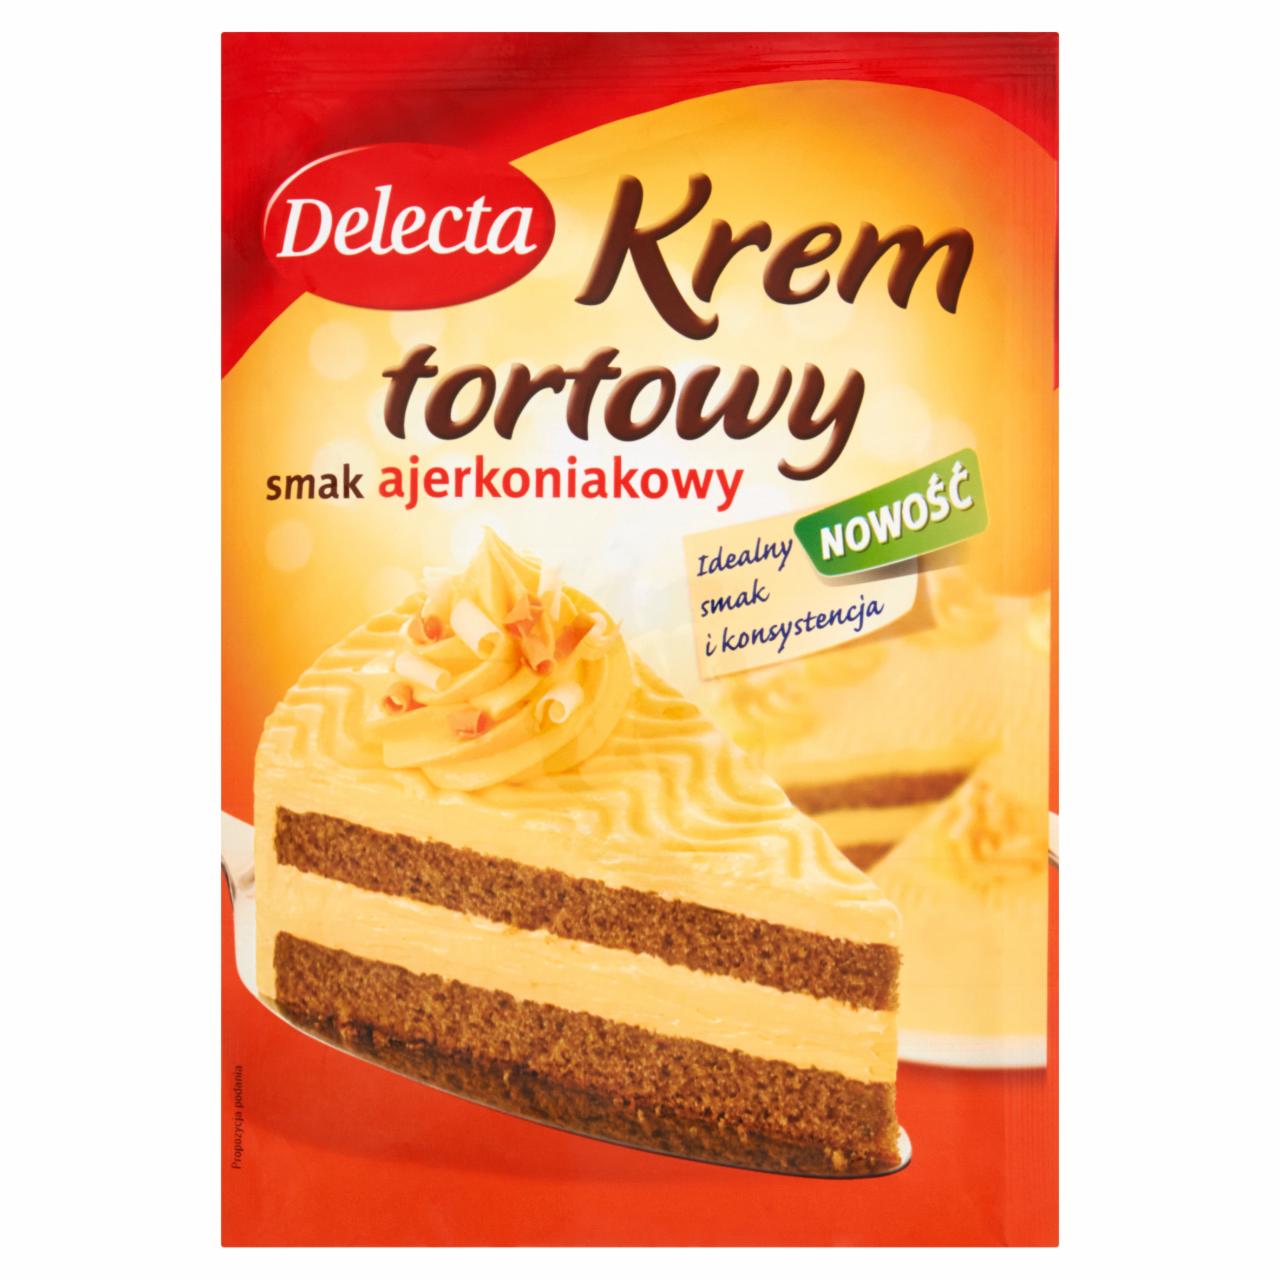 Zdjęcia - Delecta Krem tortowy smak ajerkoniakowy 110 g